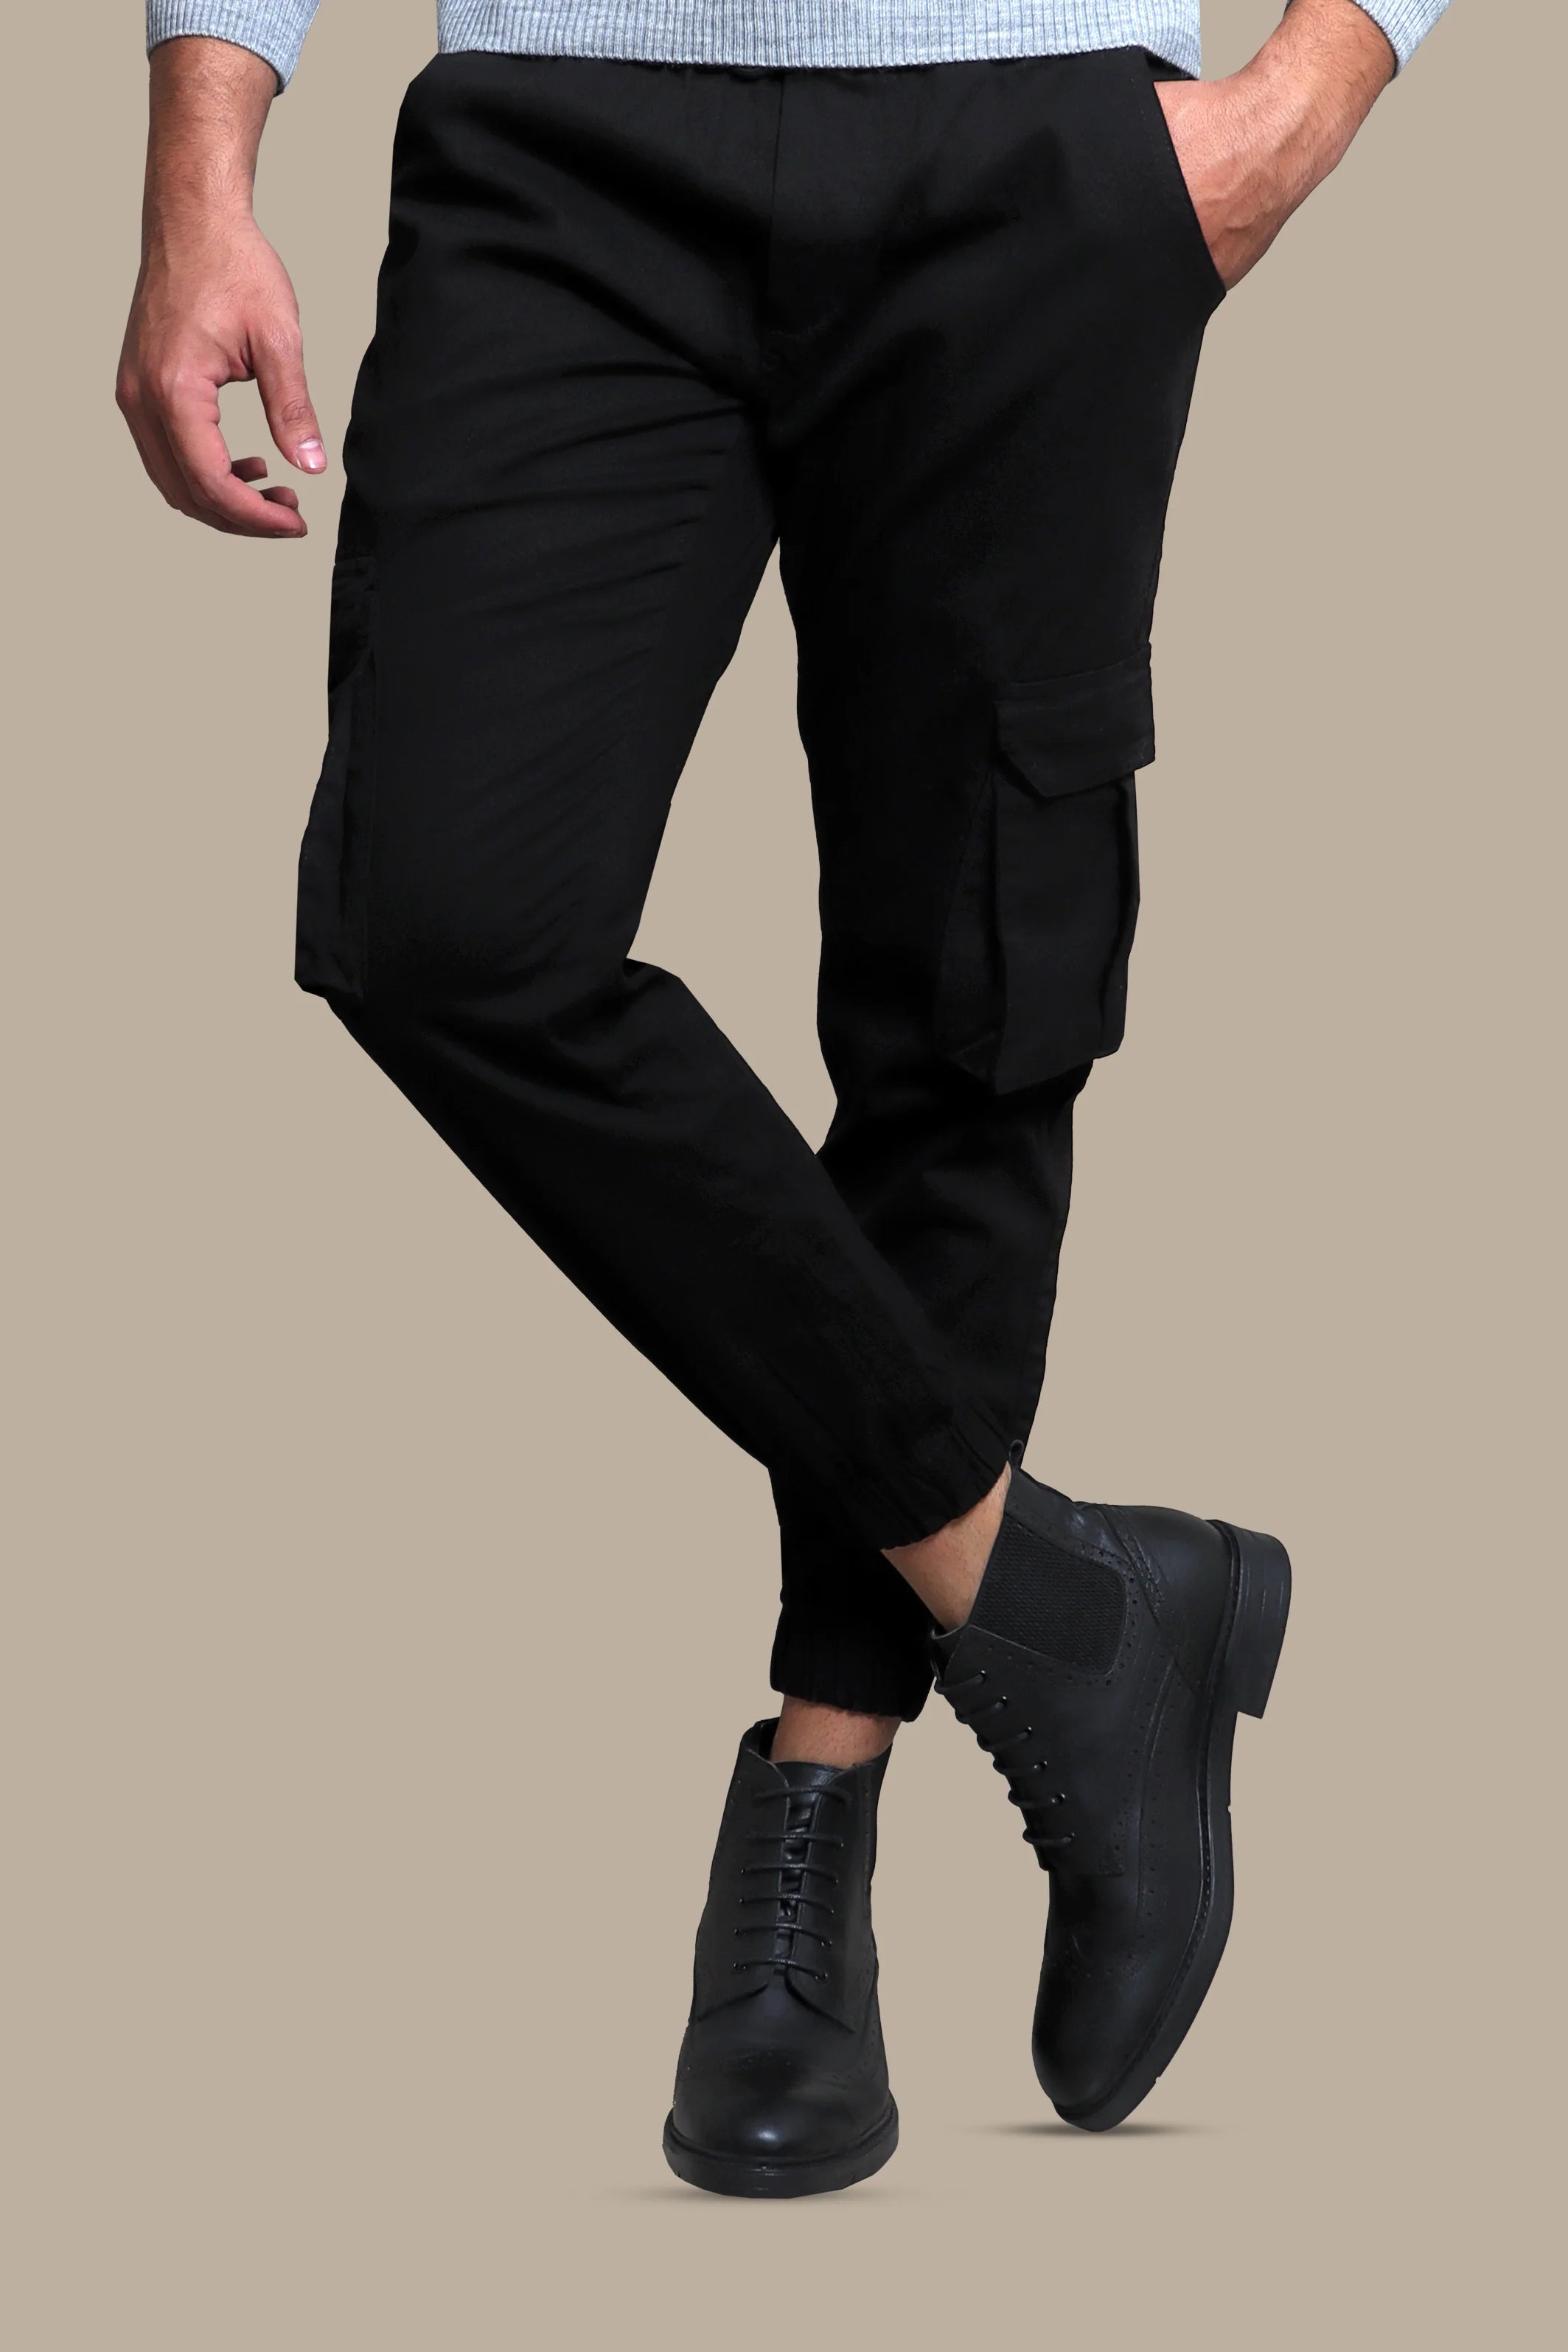 Noir Elegance: Black Cargo Pants for Timeless Style